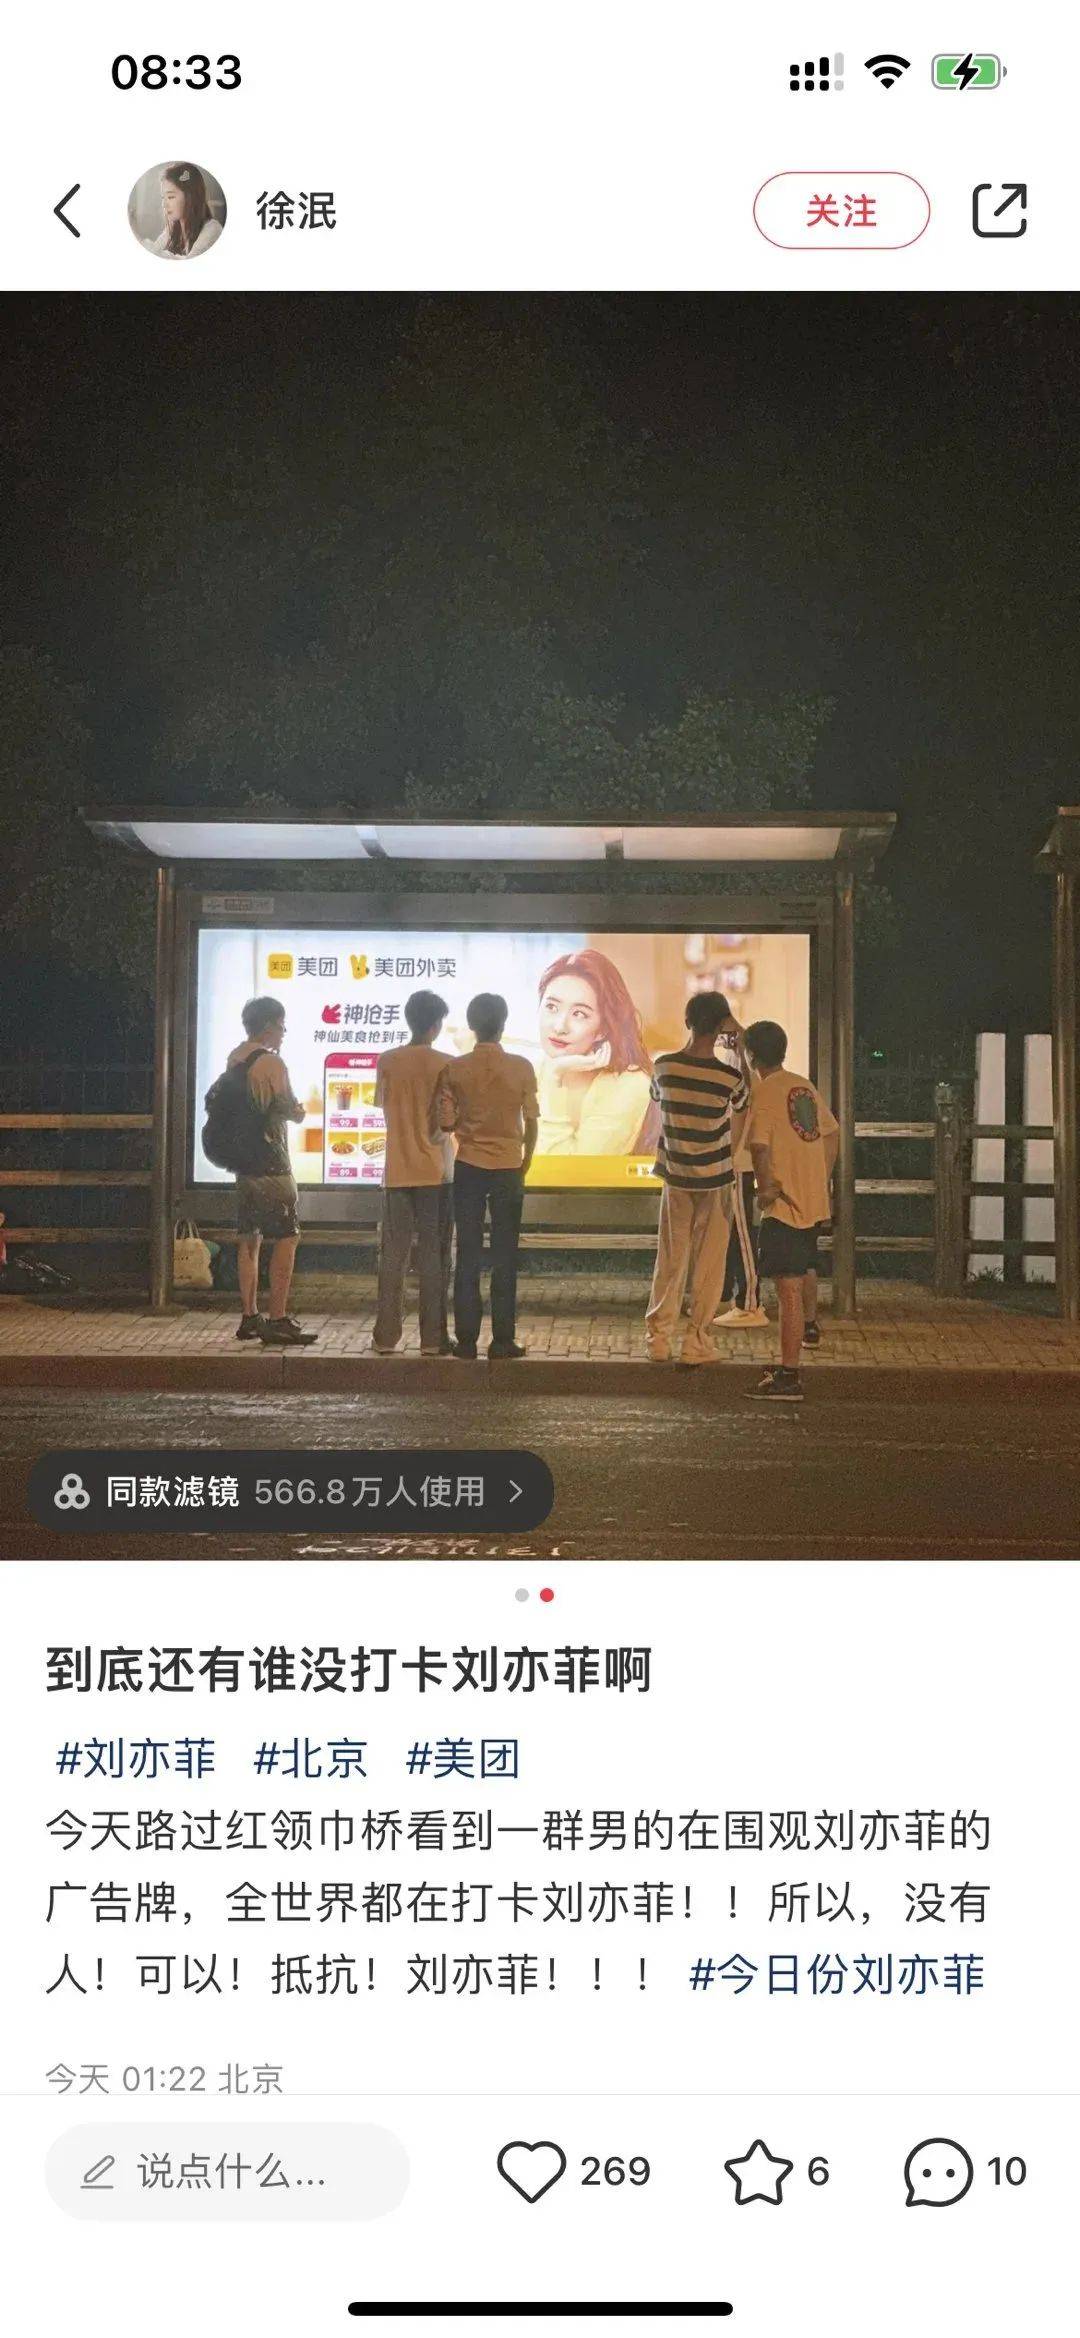 看完美团外卖和刘亦菲的新广告，想点外卖了-8.jpeg